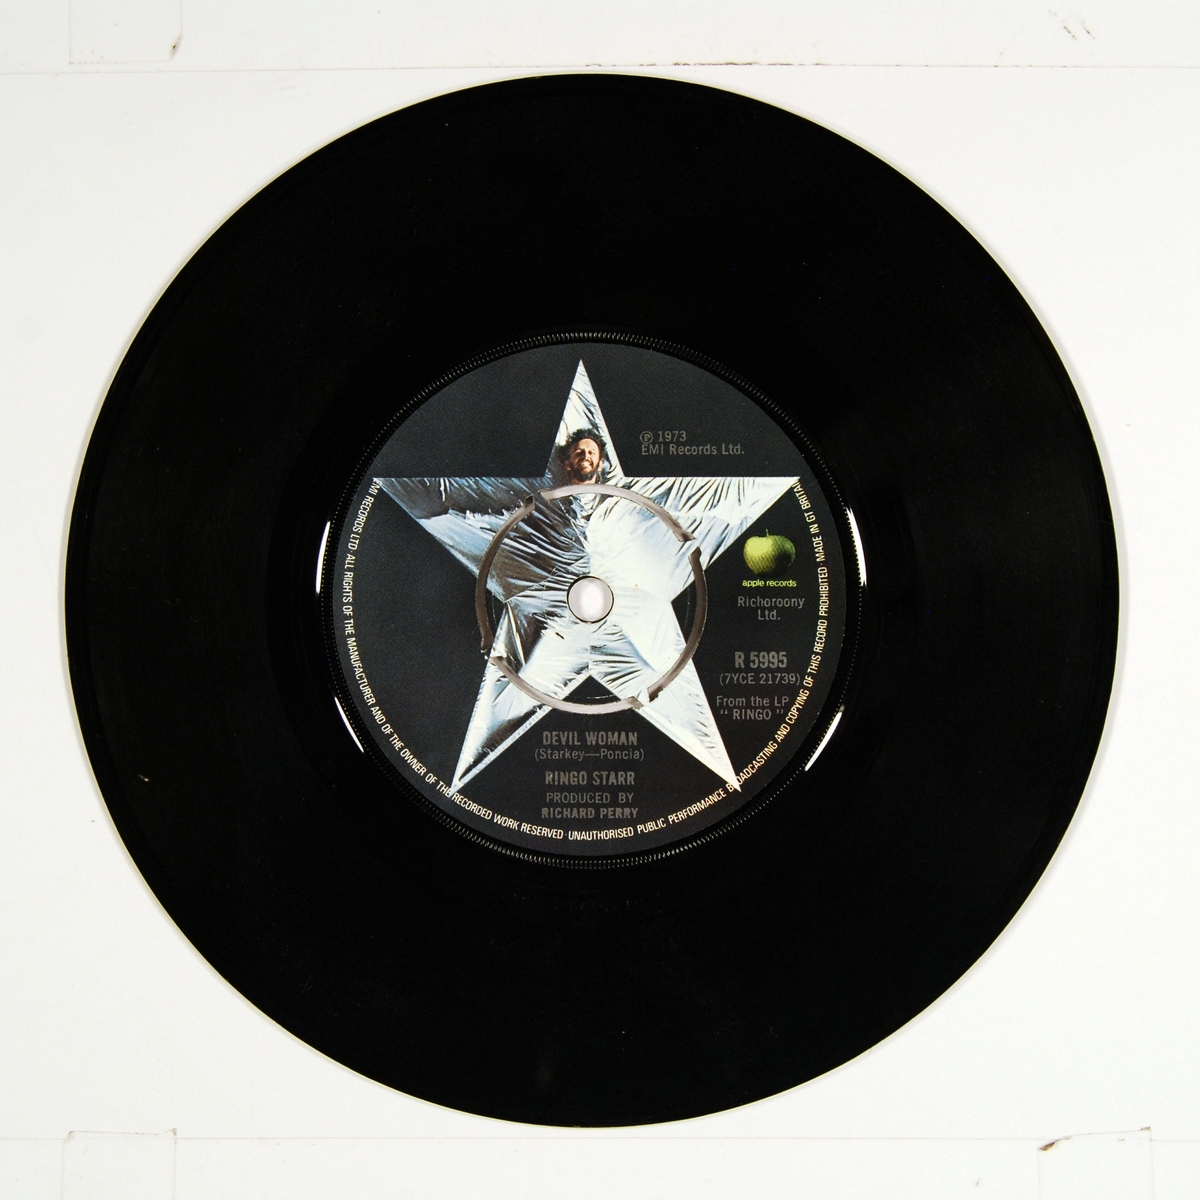 Coveret viser Ringo Starr og en liten engel/kjerub. Plateetiketten viser Ringo Starr i en stjerne.